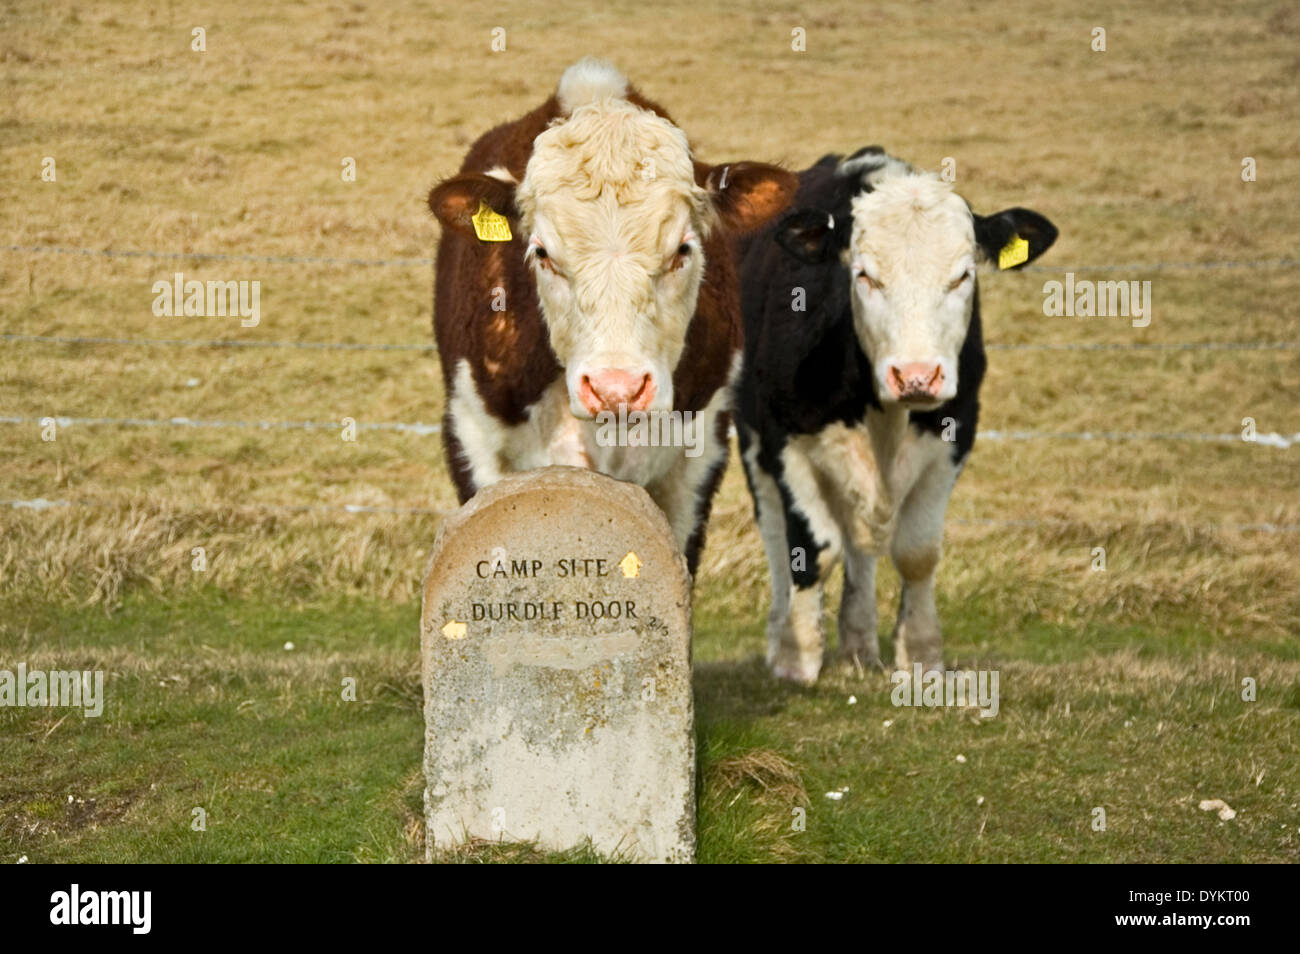 Zwei Kühe stehen hinter einem Stein Weg-Marker zu unterzeichnen, in Richtung Durdle Door Campingplatz Stockfoto